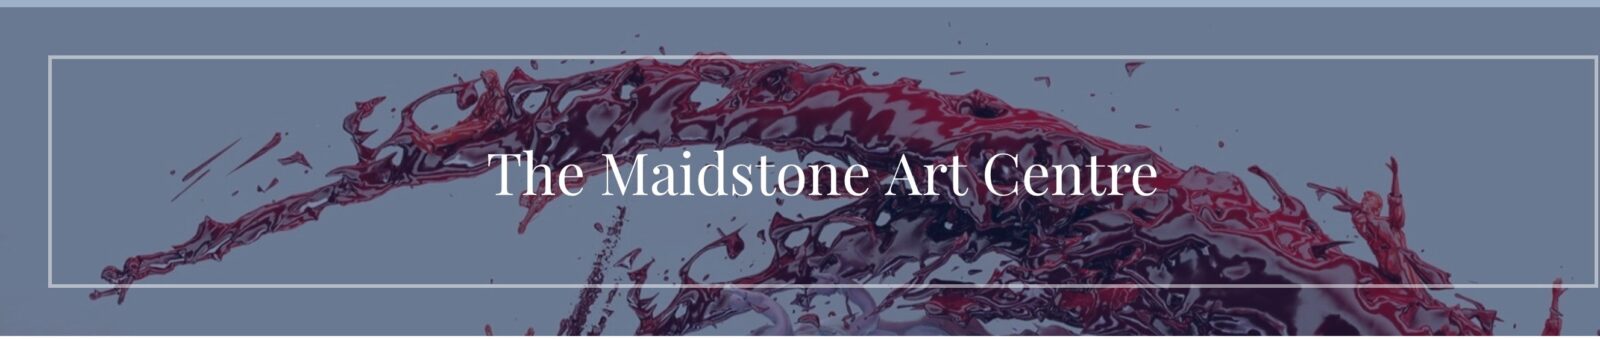 The Maidstone Art Centre